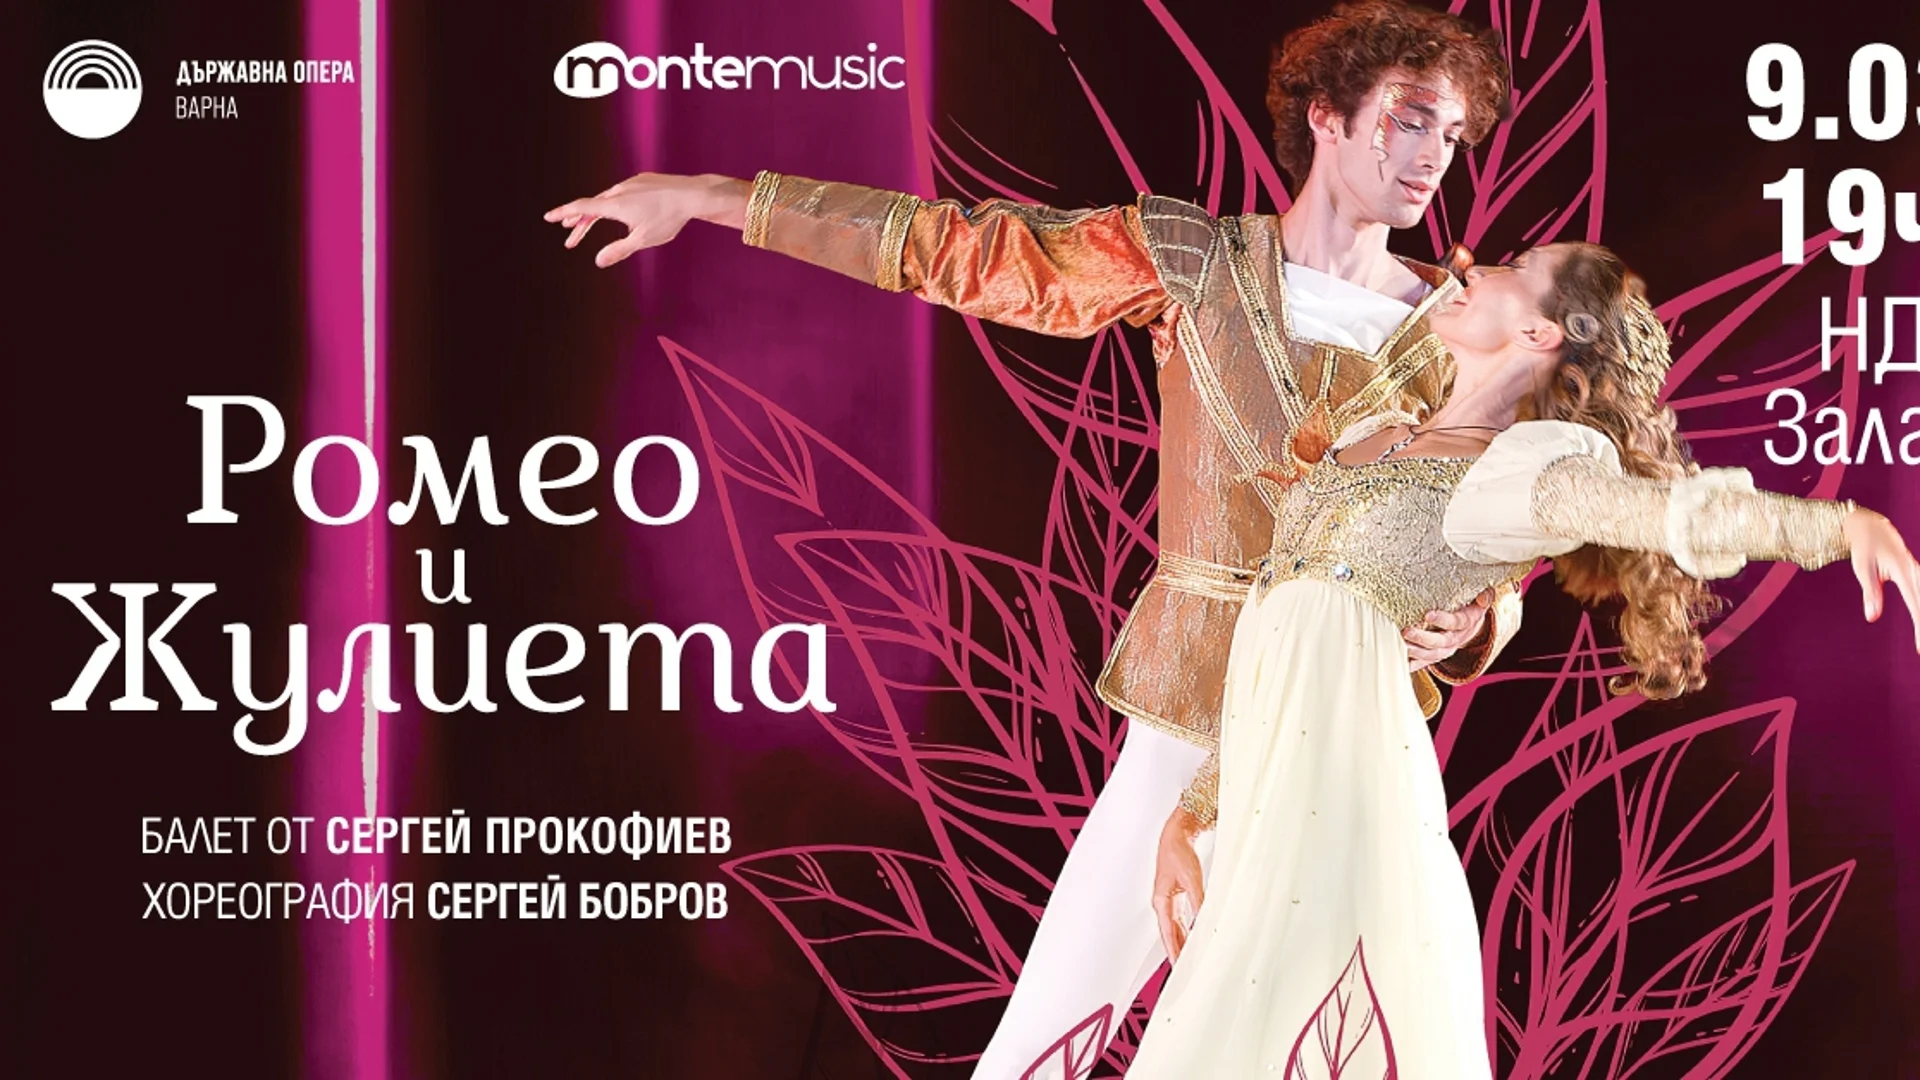 Солисти и трупа с международно признание танцуват в балетния спектакъл "Ромео и Жулиета" на 9 март в НДК